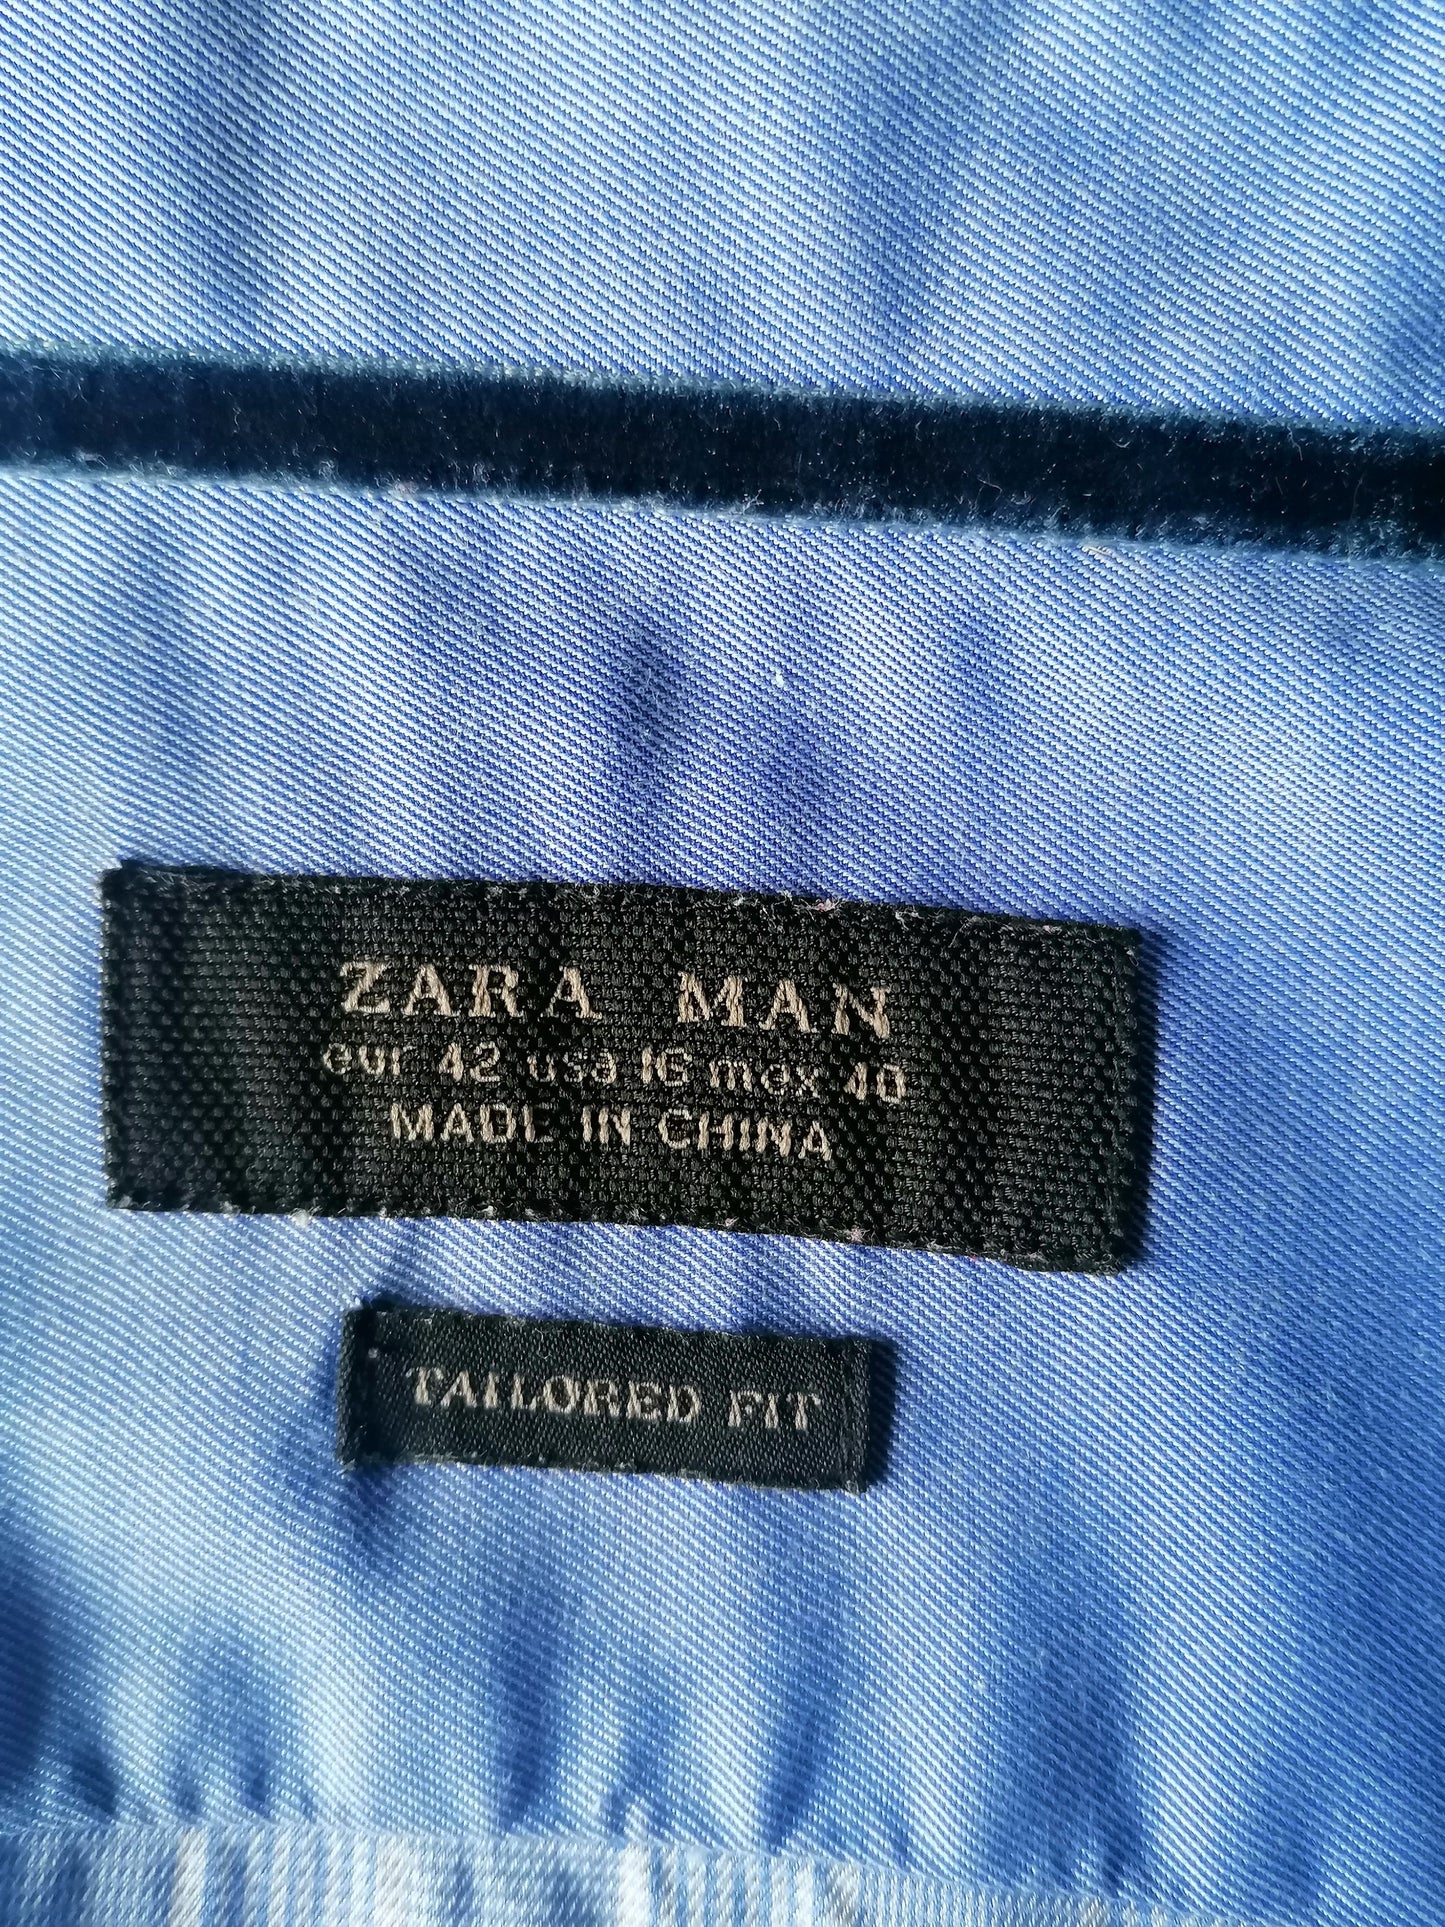 Chemise Zara Man. Blue blanc à carreaux. Taille 42 / L. Fit sur mesure.